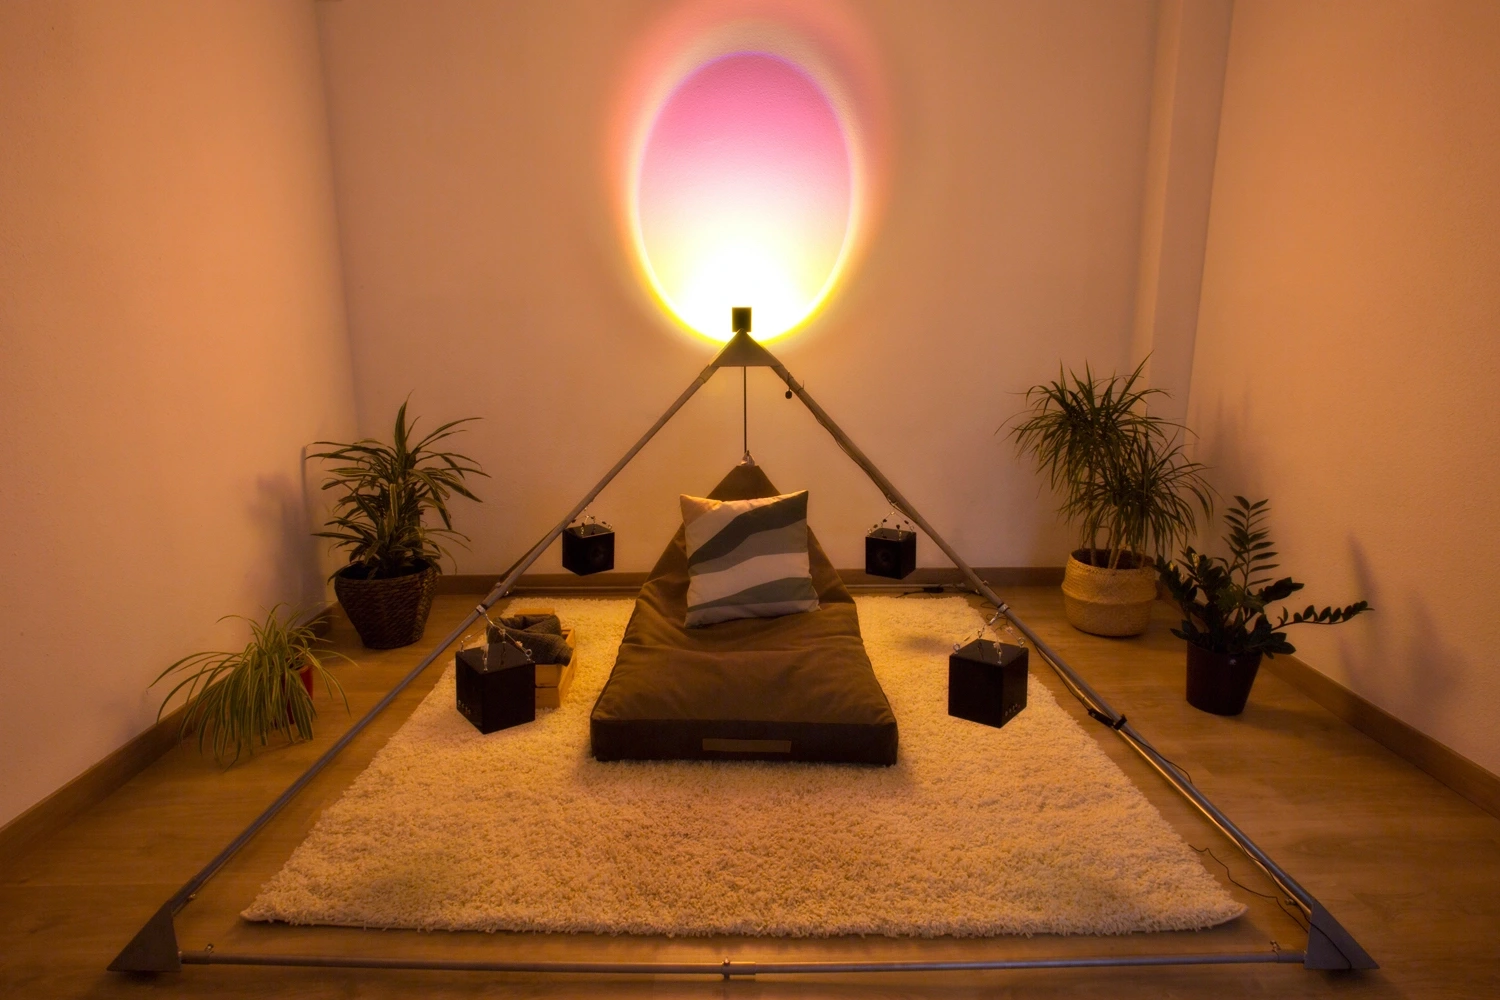 Iridis pirámide de meditación y sonido